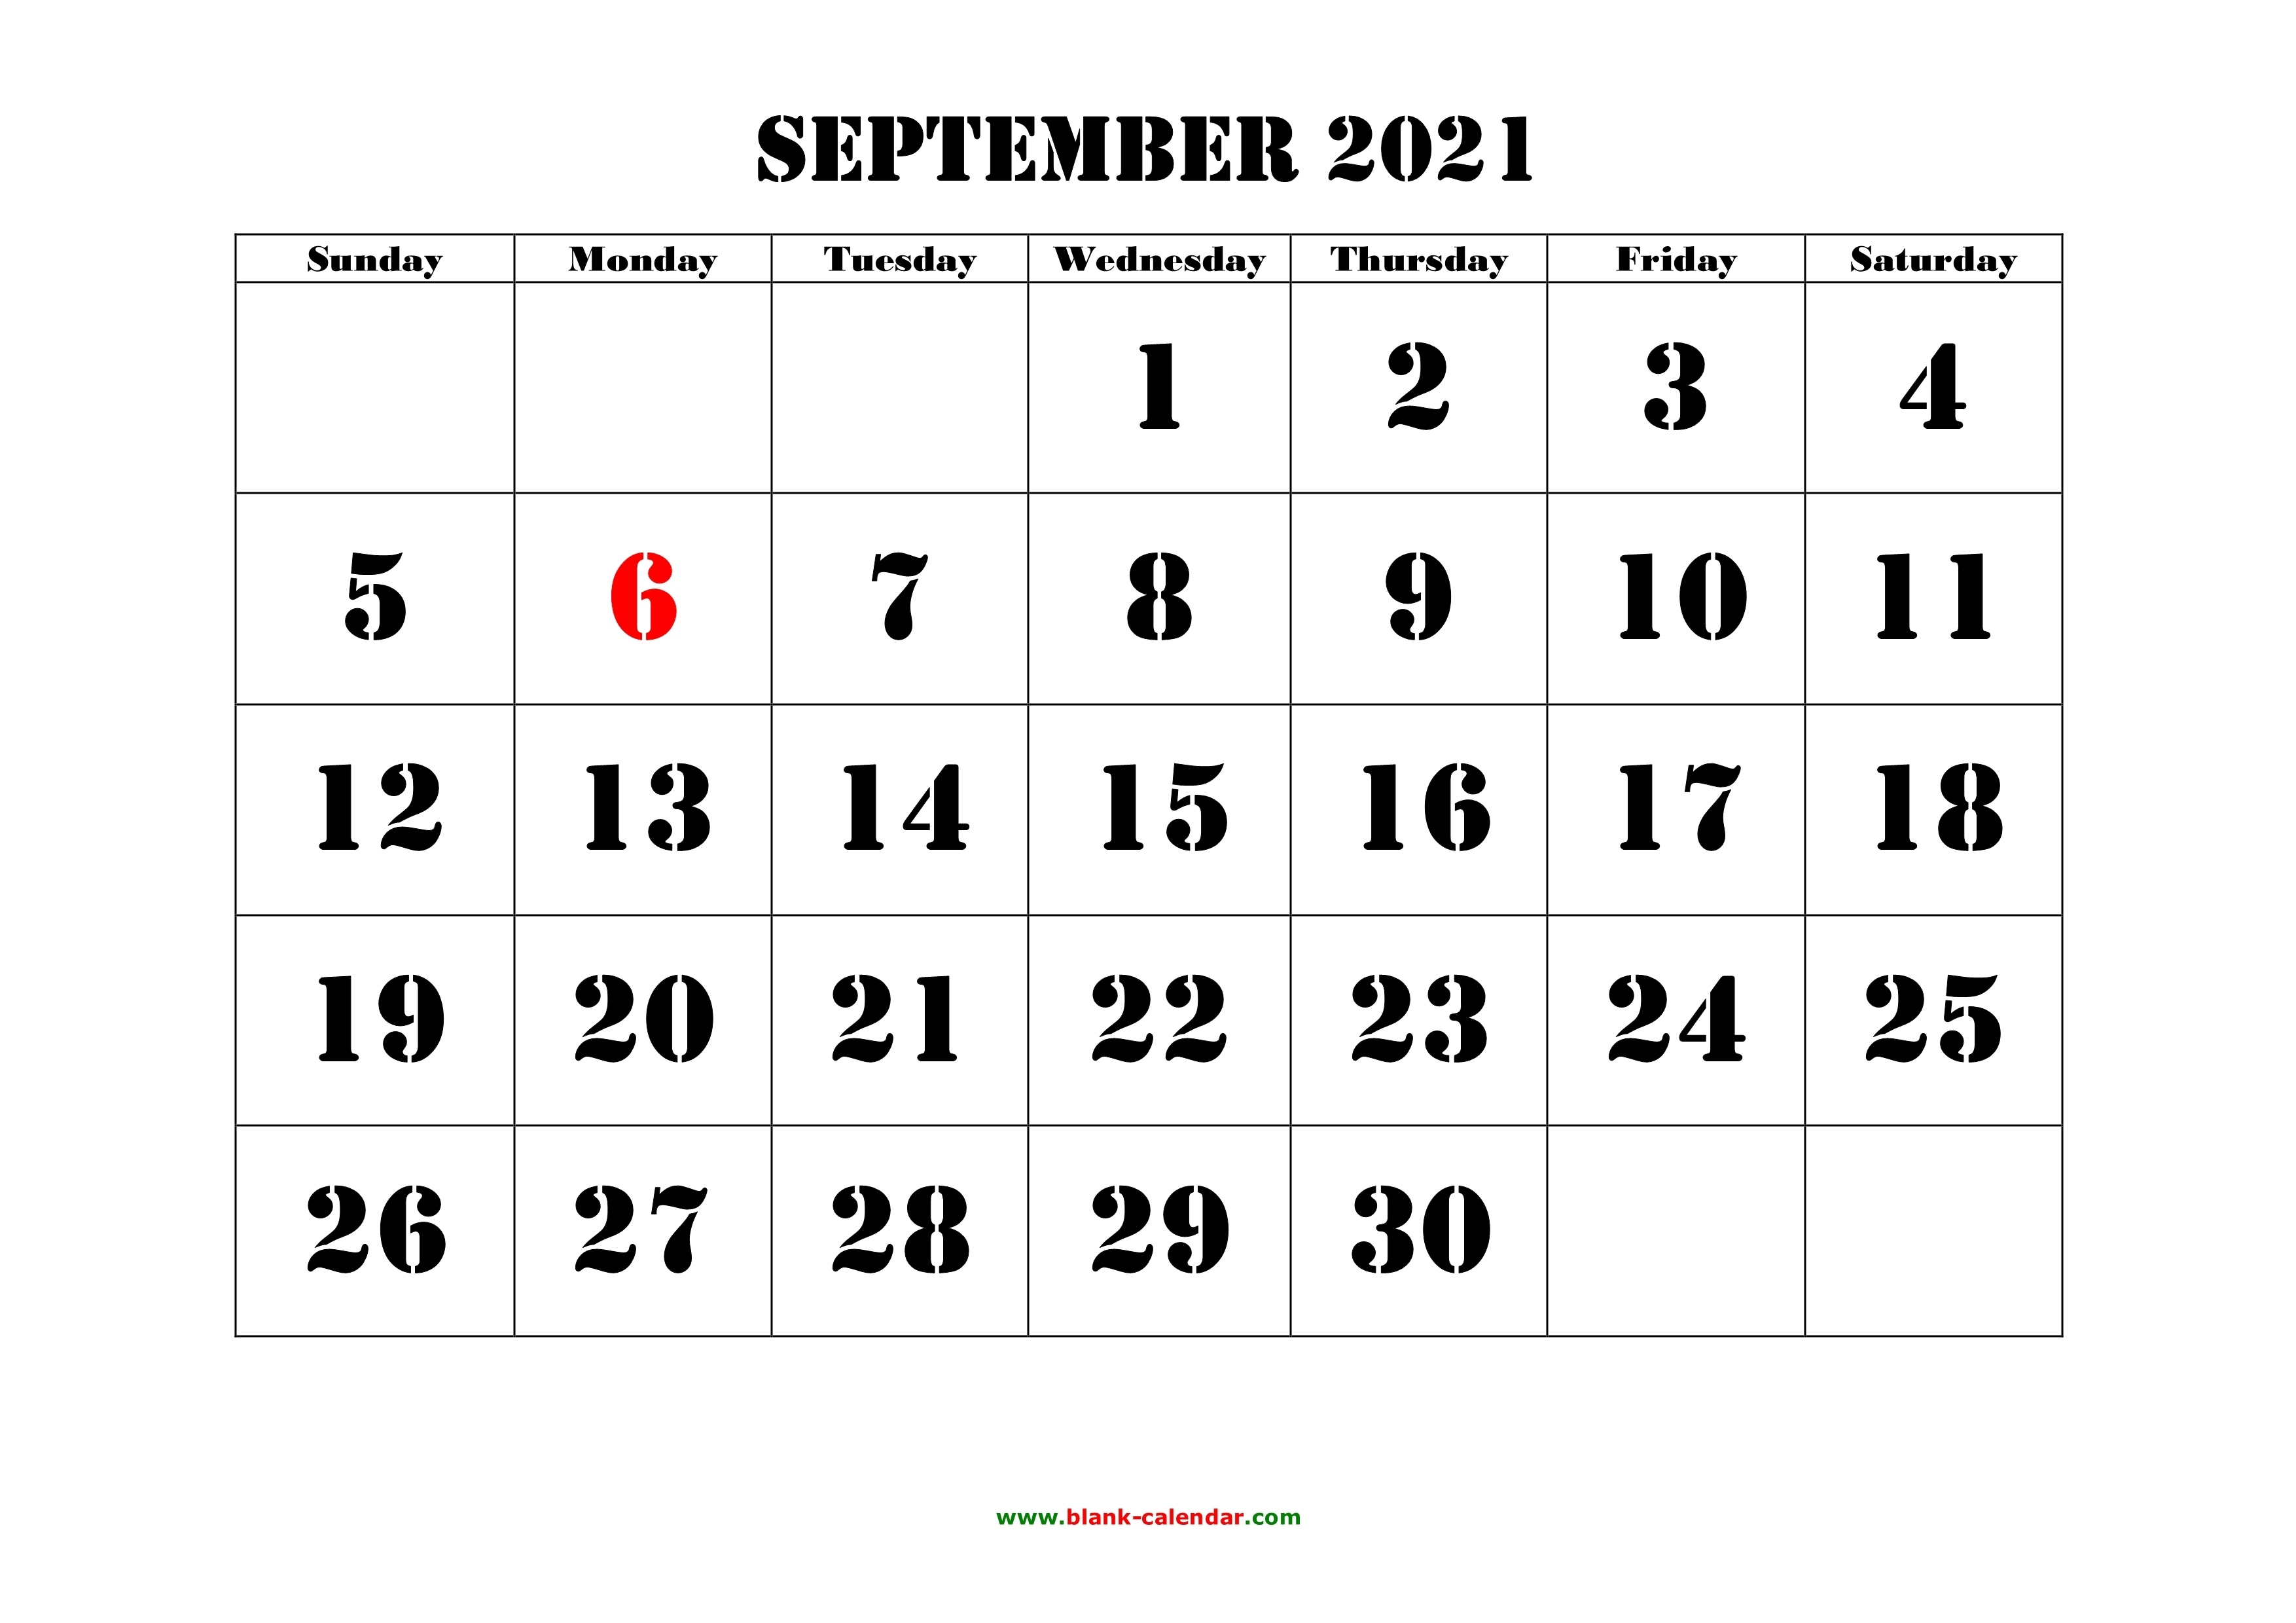 2021 Sepeltember Calendar | 2021 Calendar September 2021 Calendar With Holidays Usa